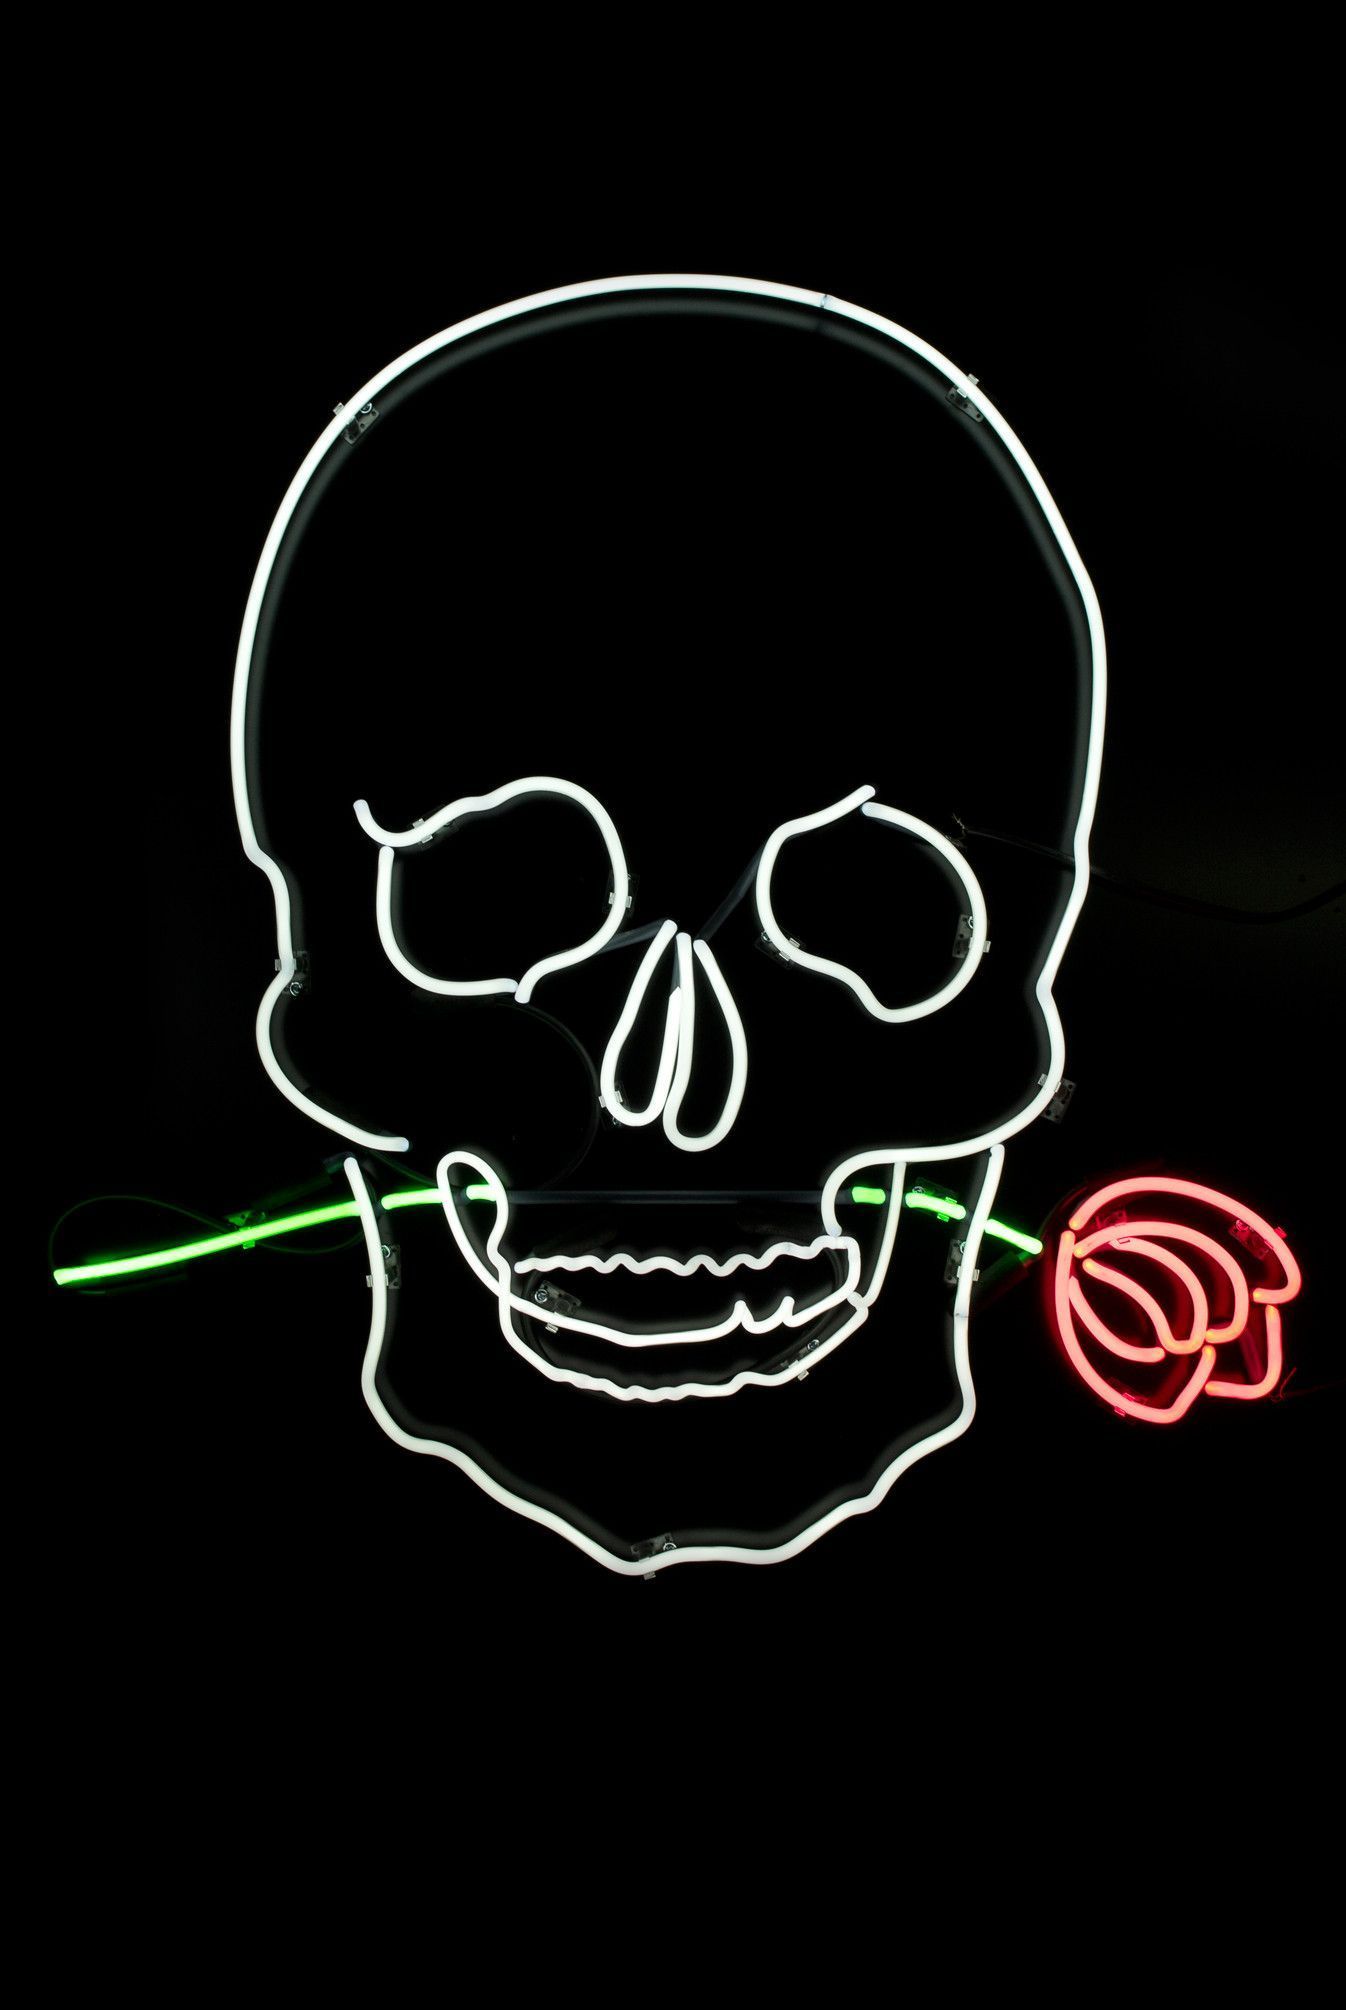 Wallpaper skull roses hat eko07 images for desktop section минимализм   download